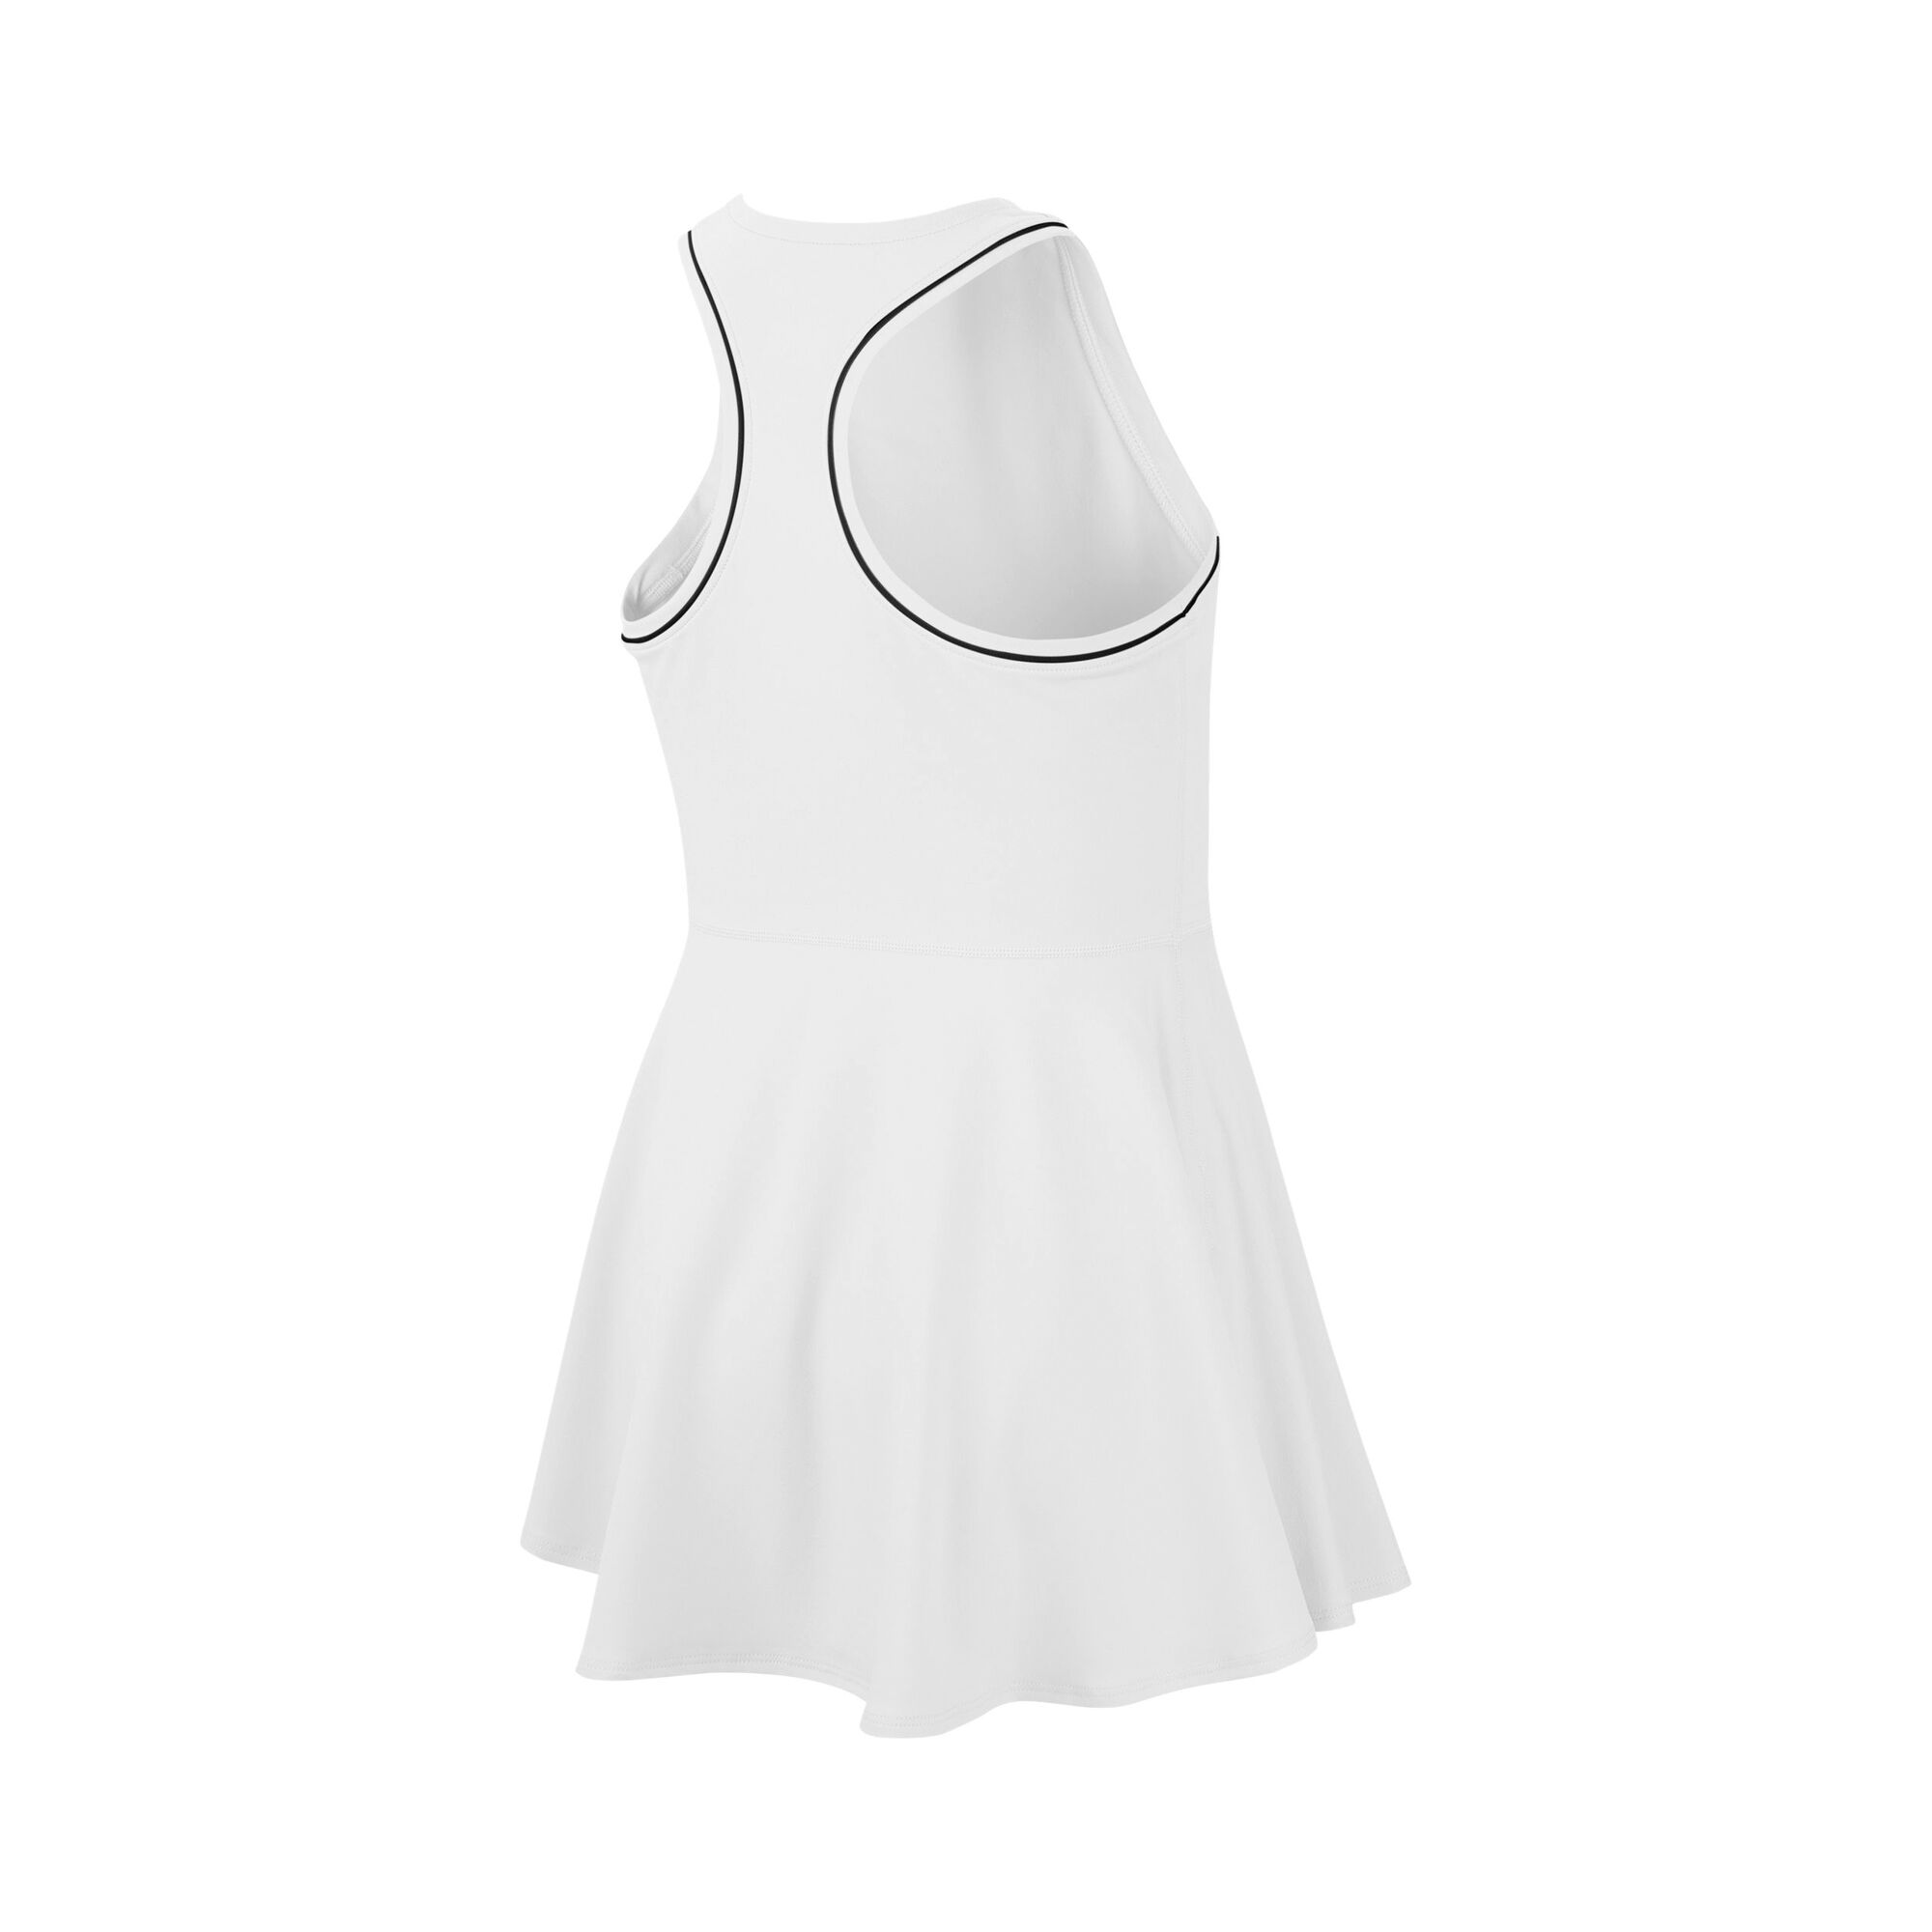 Buy Nike Court Dry Dress Girls White, Black online | Tennis Point UK